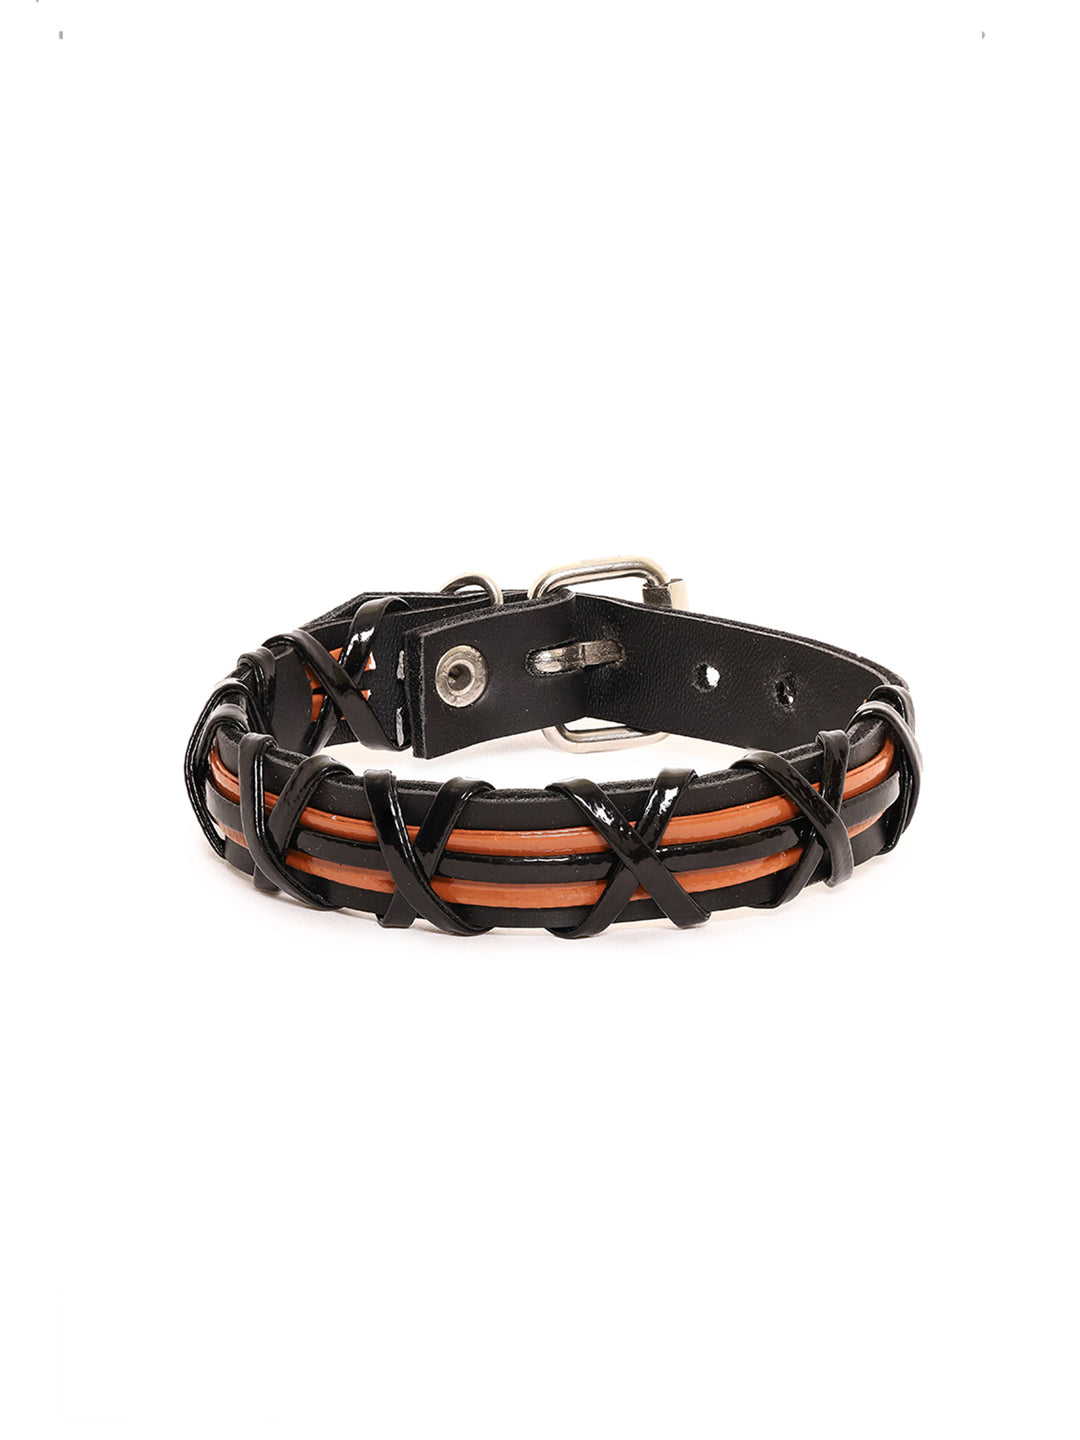 Black and Brown Leather Bracelet for men